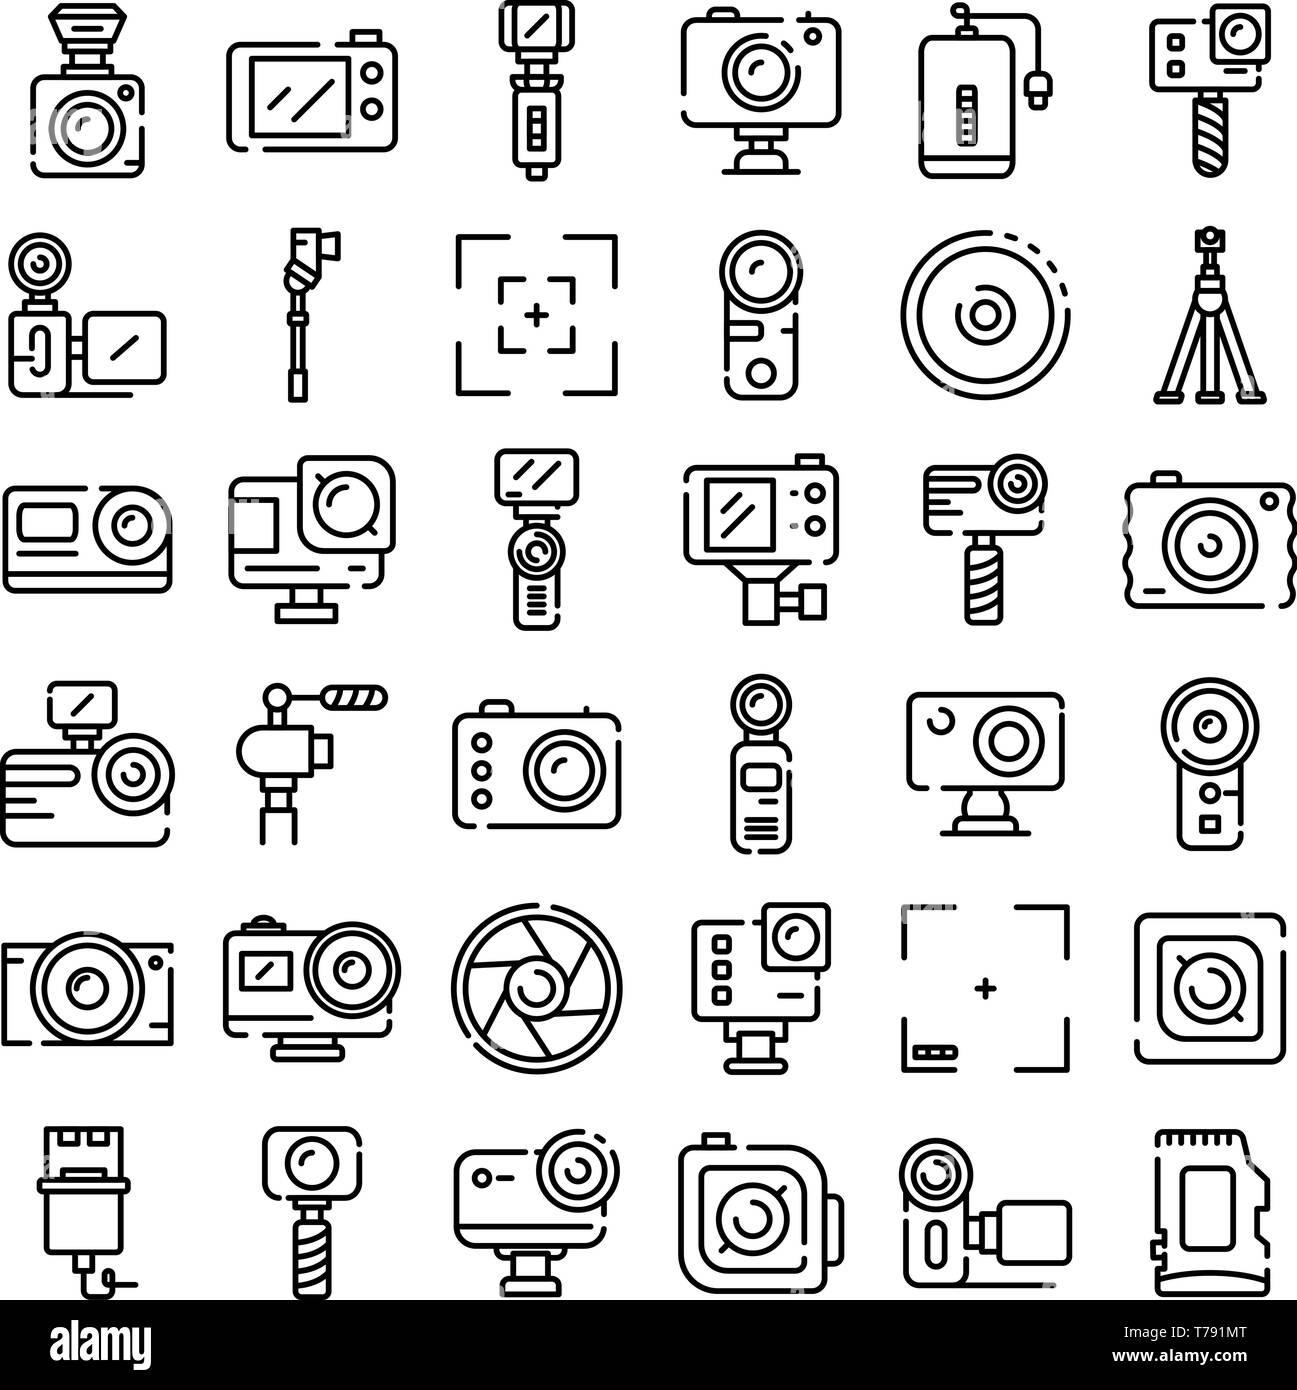 Azione fotocamera set di icone di stile di contorno Illustrazione Vettoriale